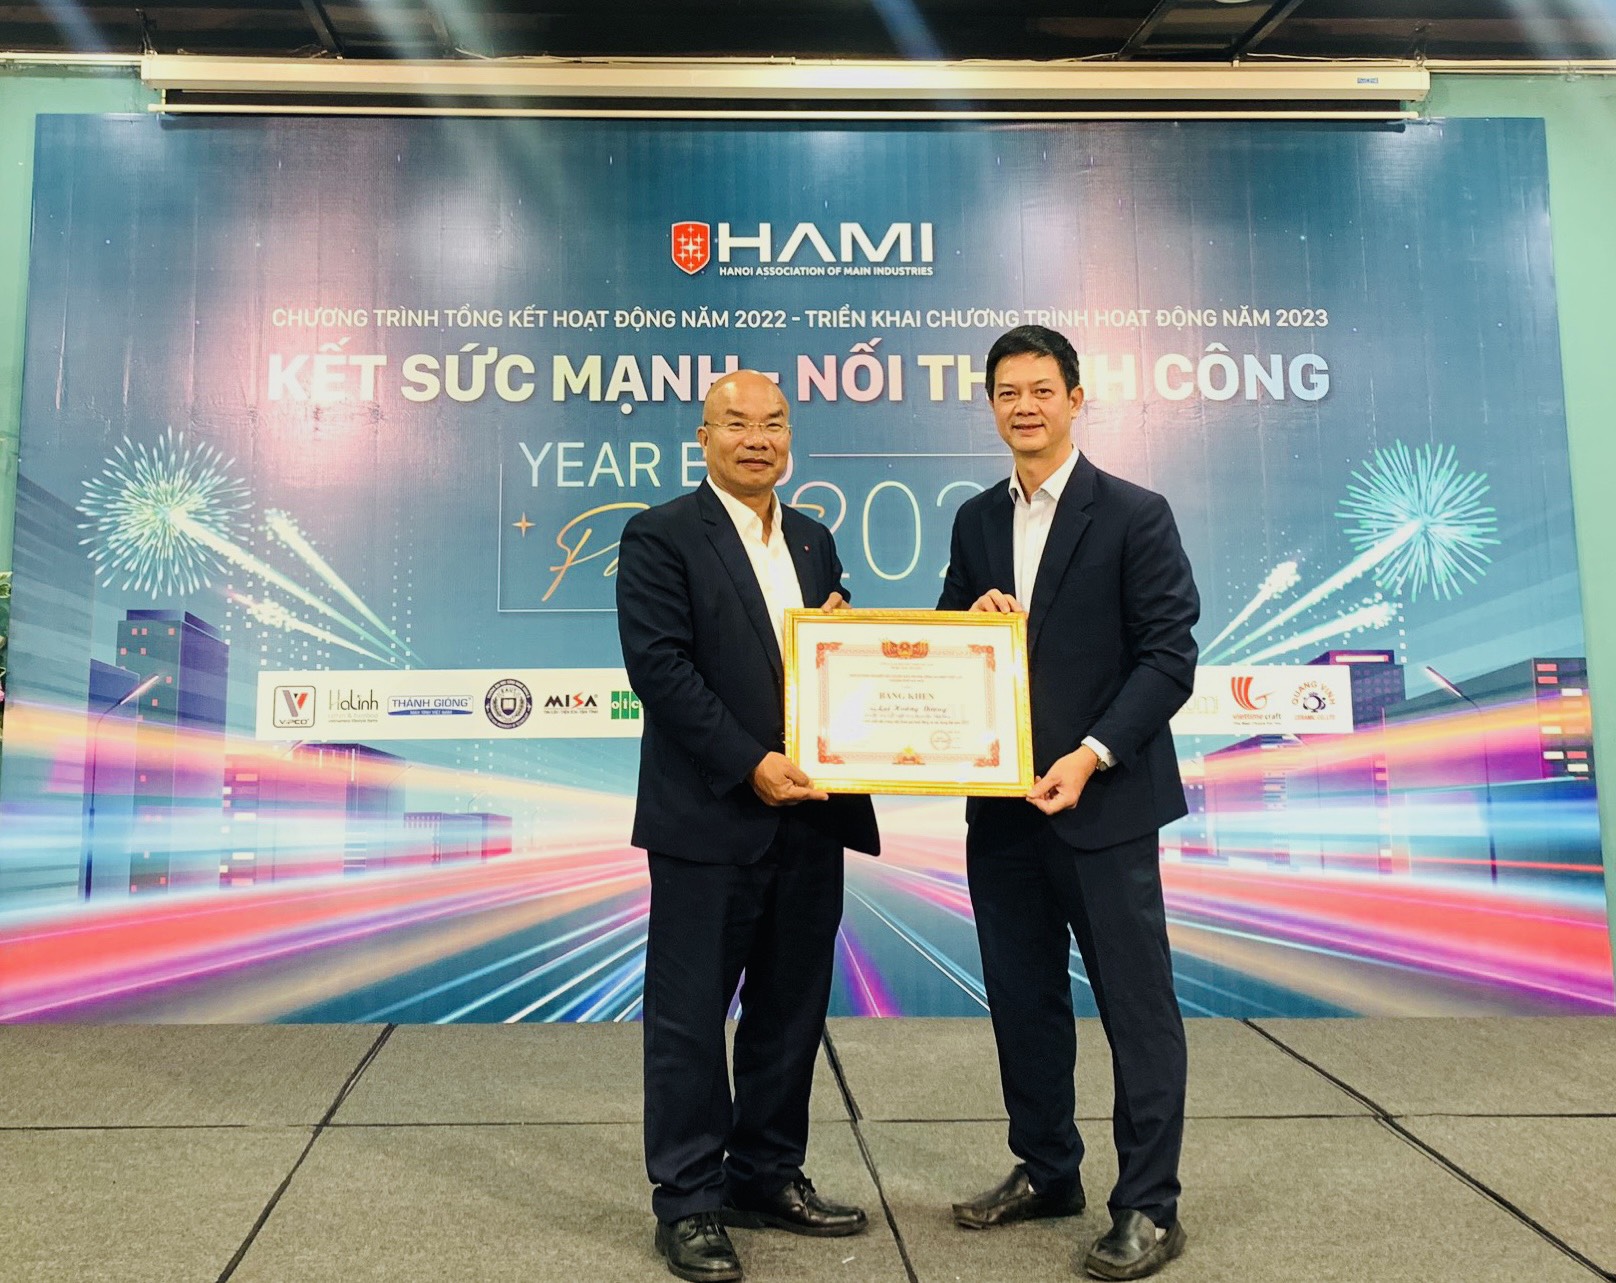 Máy tính Thánh Gióng nhận bằng khen của Hội doanh nghiệp sản xuất sản phẩm công nghiệp chủ lực thành phố Hà Nội – HAMI